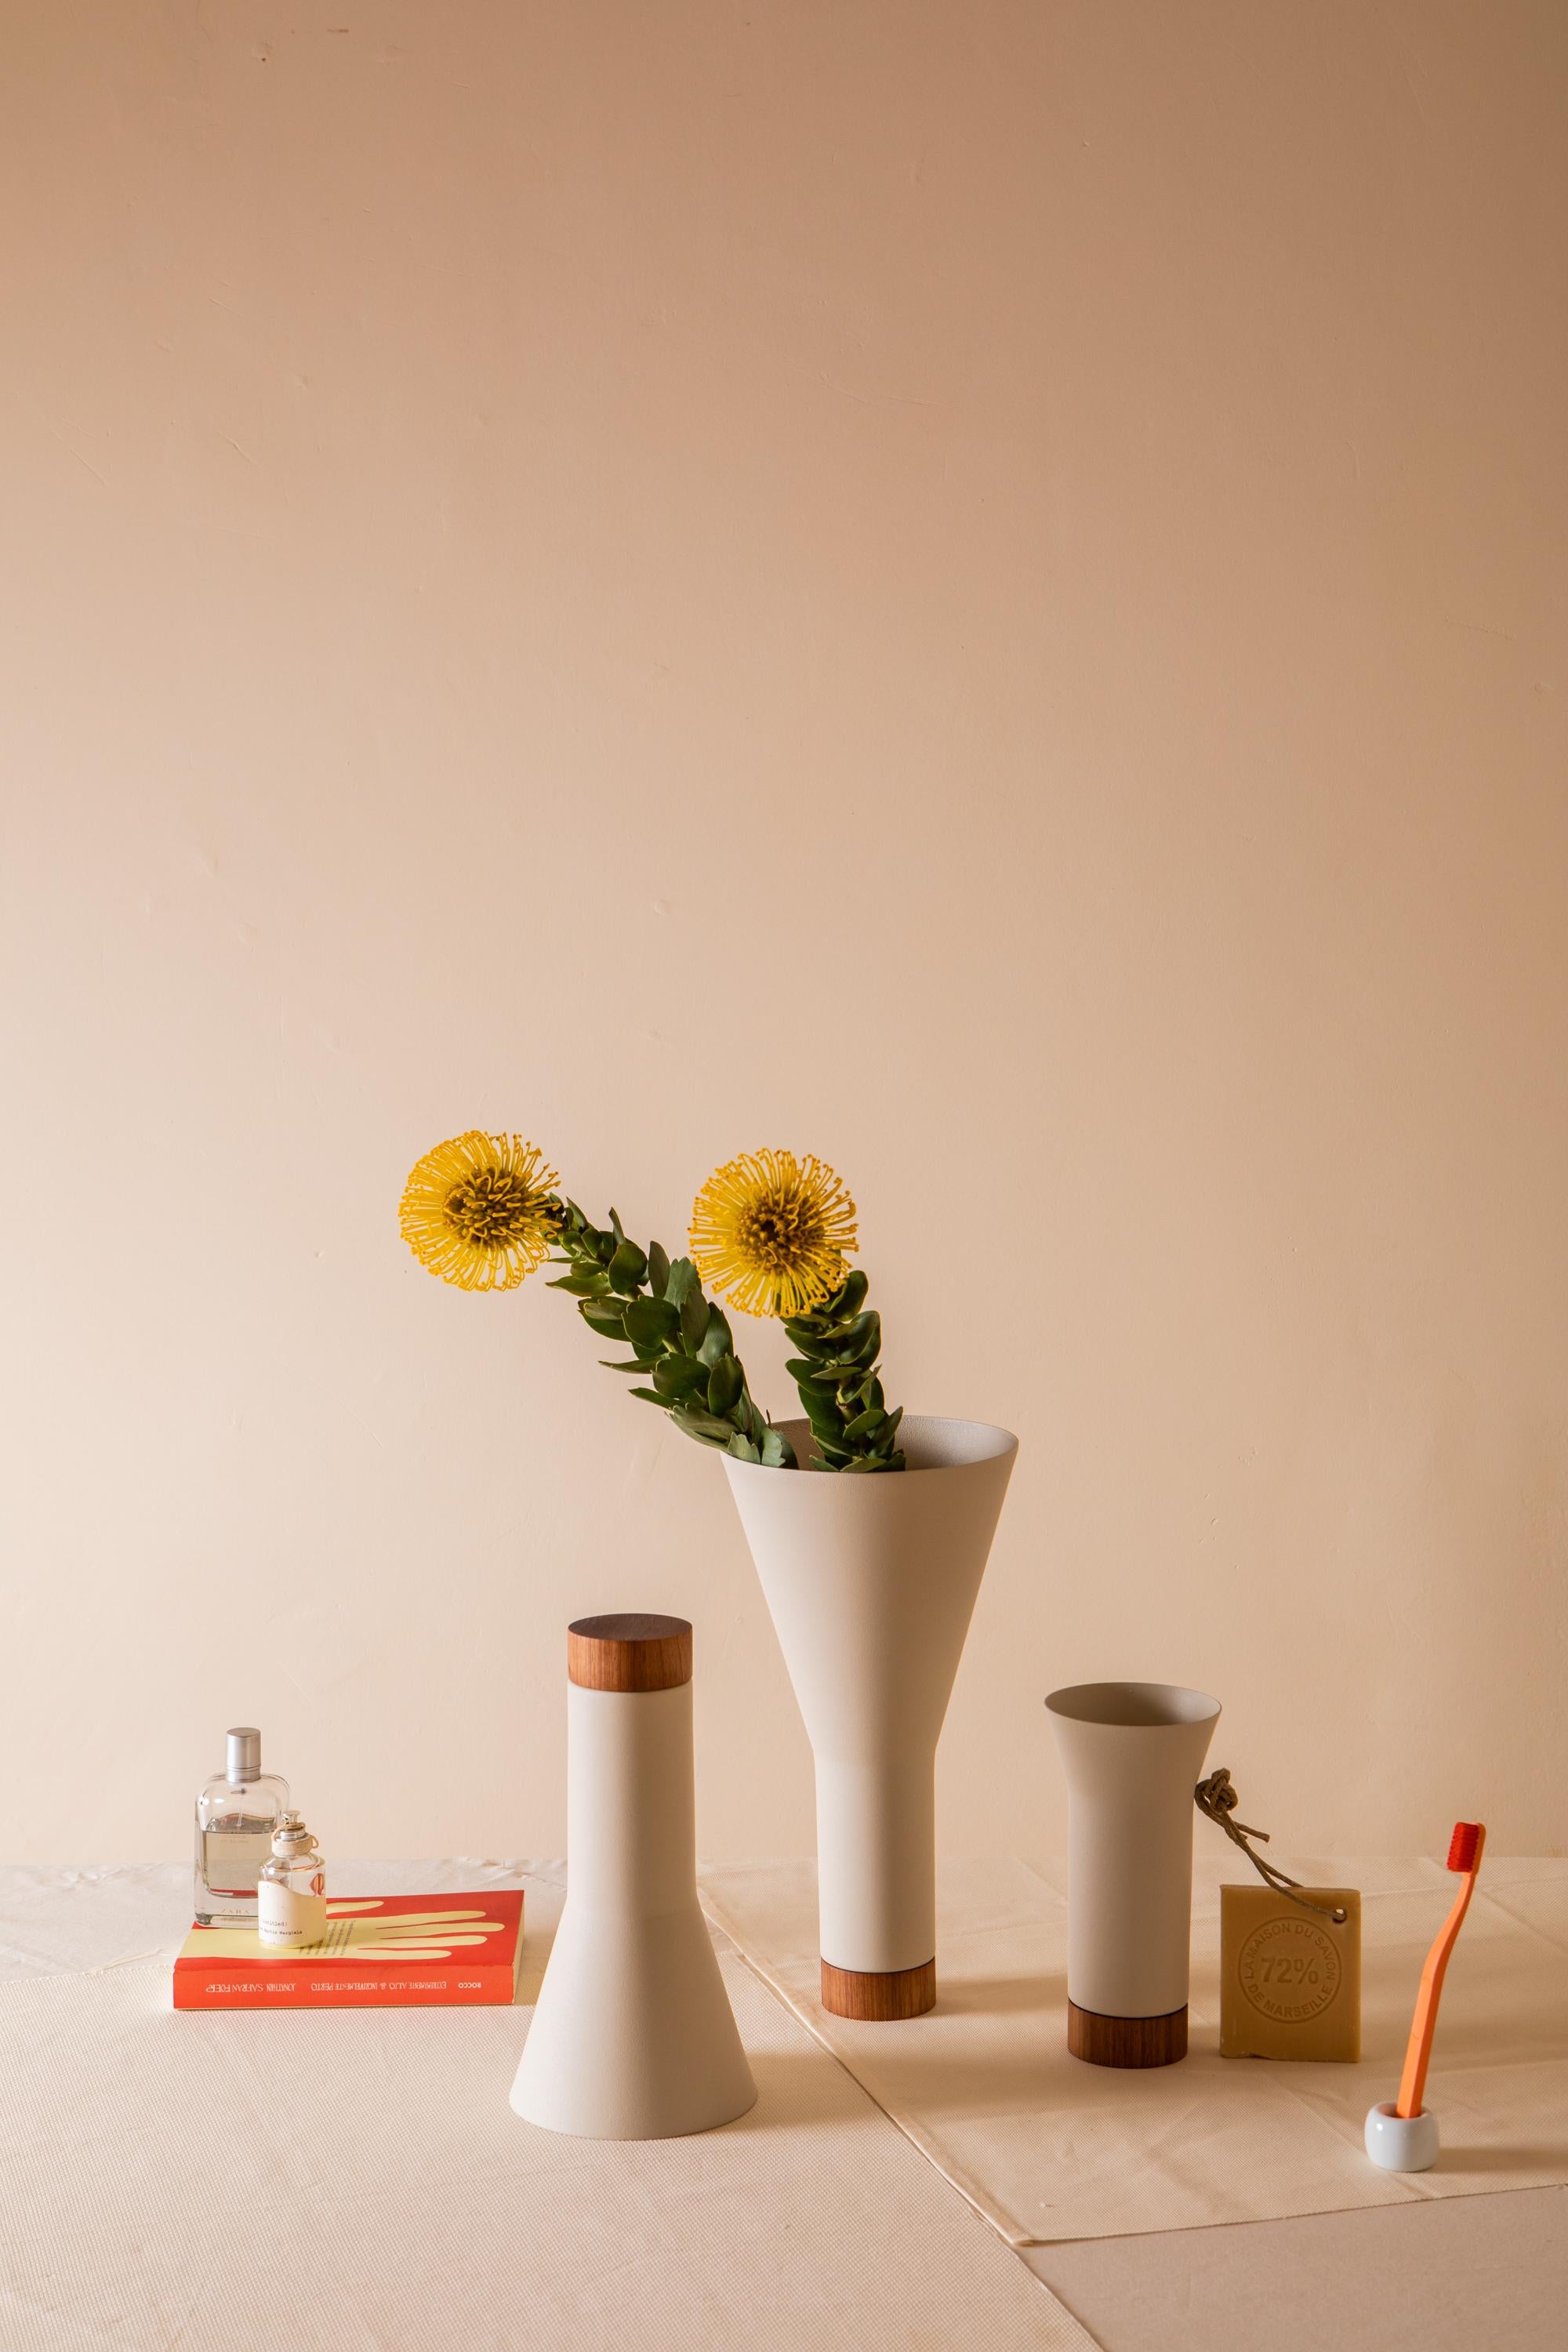 Farol ist eine Linie, die aus drei Vasen besteht, die einzeln oder als Set, für Blumenarrangements oder als dekorative Elemente verwendet werden können. Die Öffnung jeder Vase hat eine andere Höhe und einen anderen Durchmesser, so dass drei